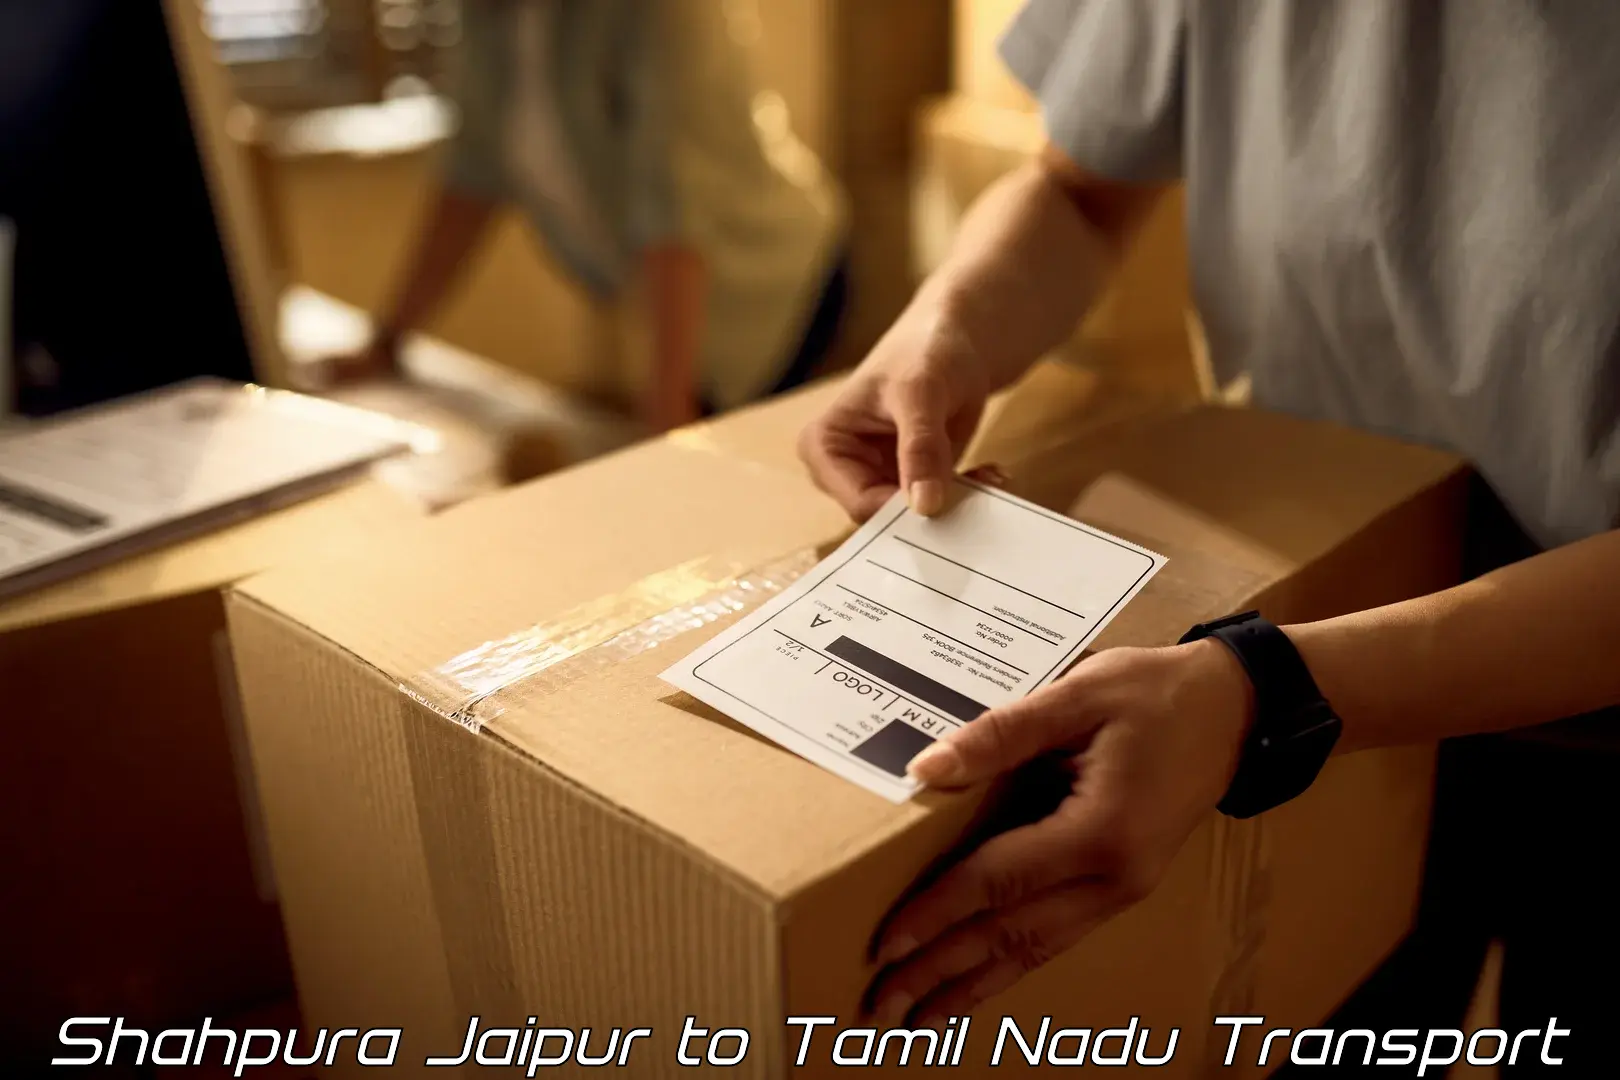 Vehicle parcel service Shahpura Jaipur to Rameswaram